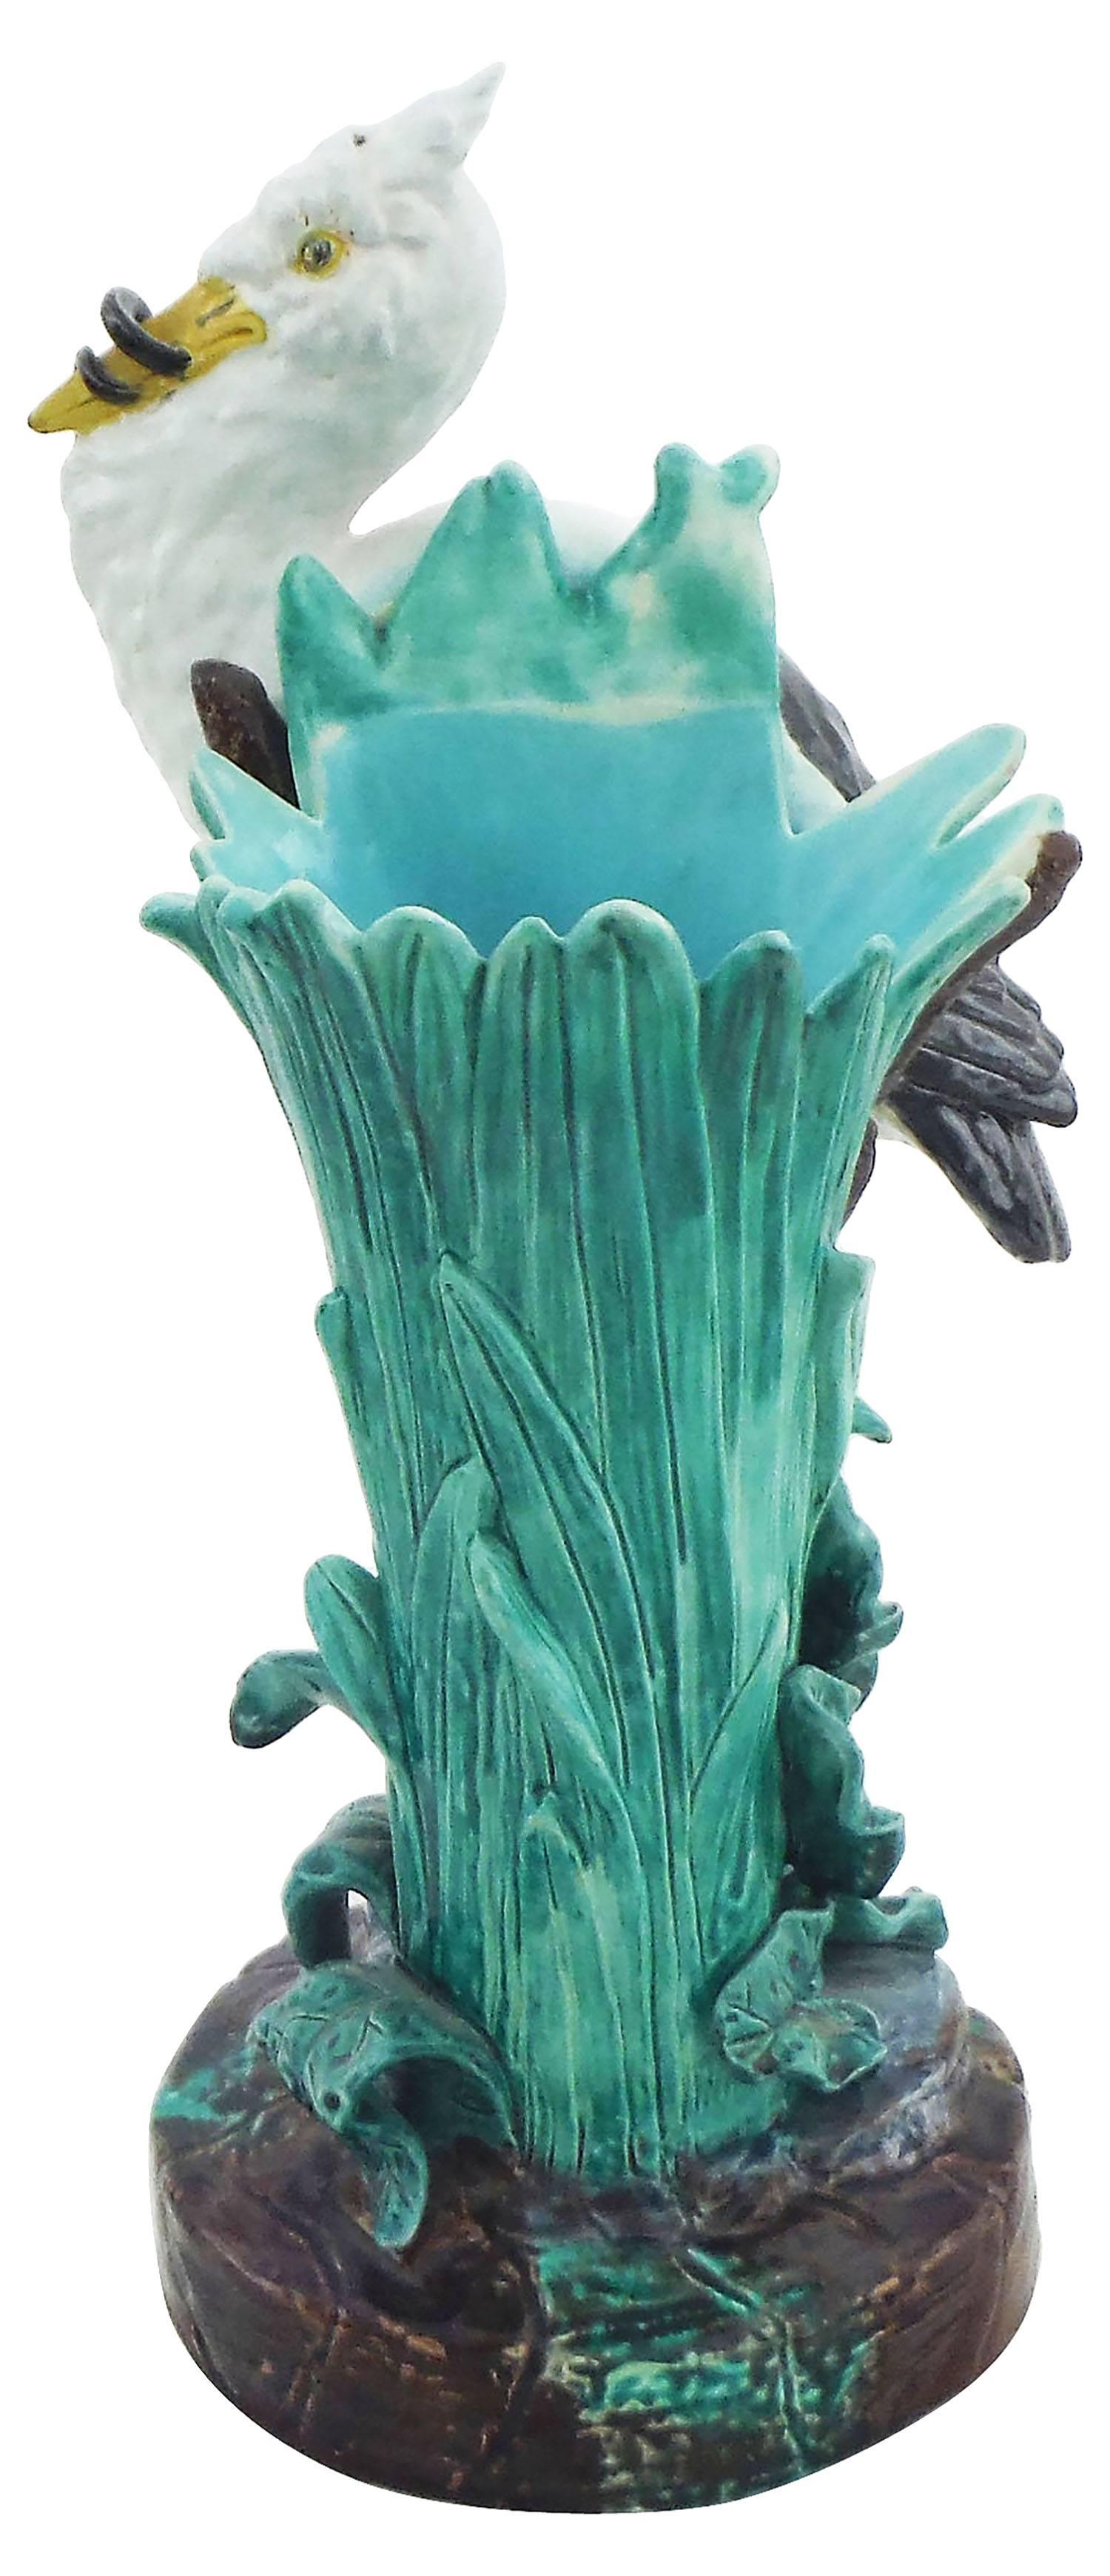 Ce vase cigogne en majolique victorienne est signé Joseph Holdcroft, inspiré par Minton Joseph Holdcroft propose ici une version différente plus rustique.
C'est la plus petite taille, la cigogne est contre un vase de quenouilles.
Référence / page